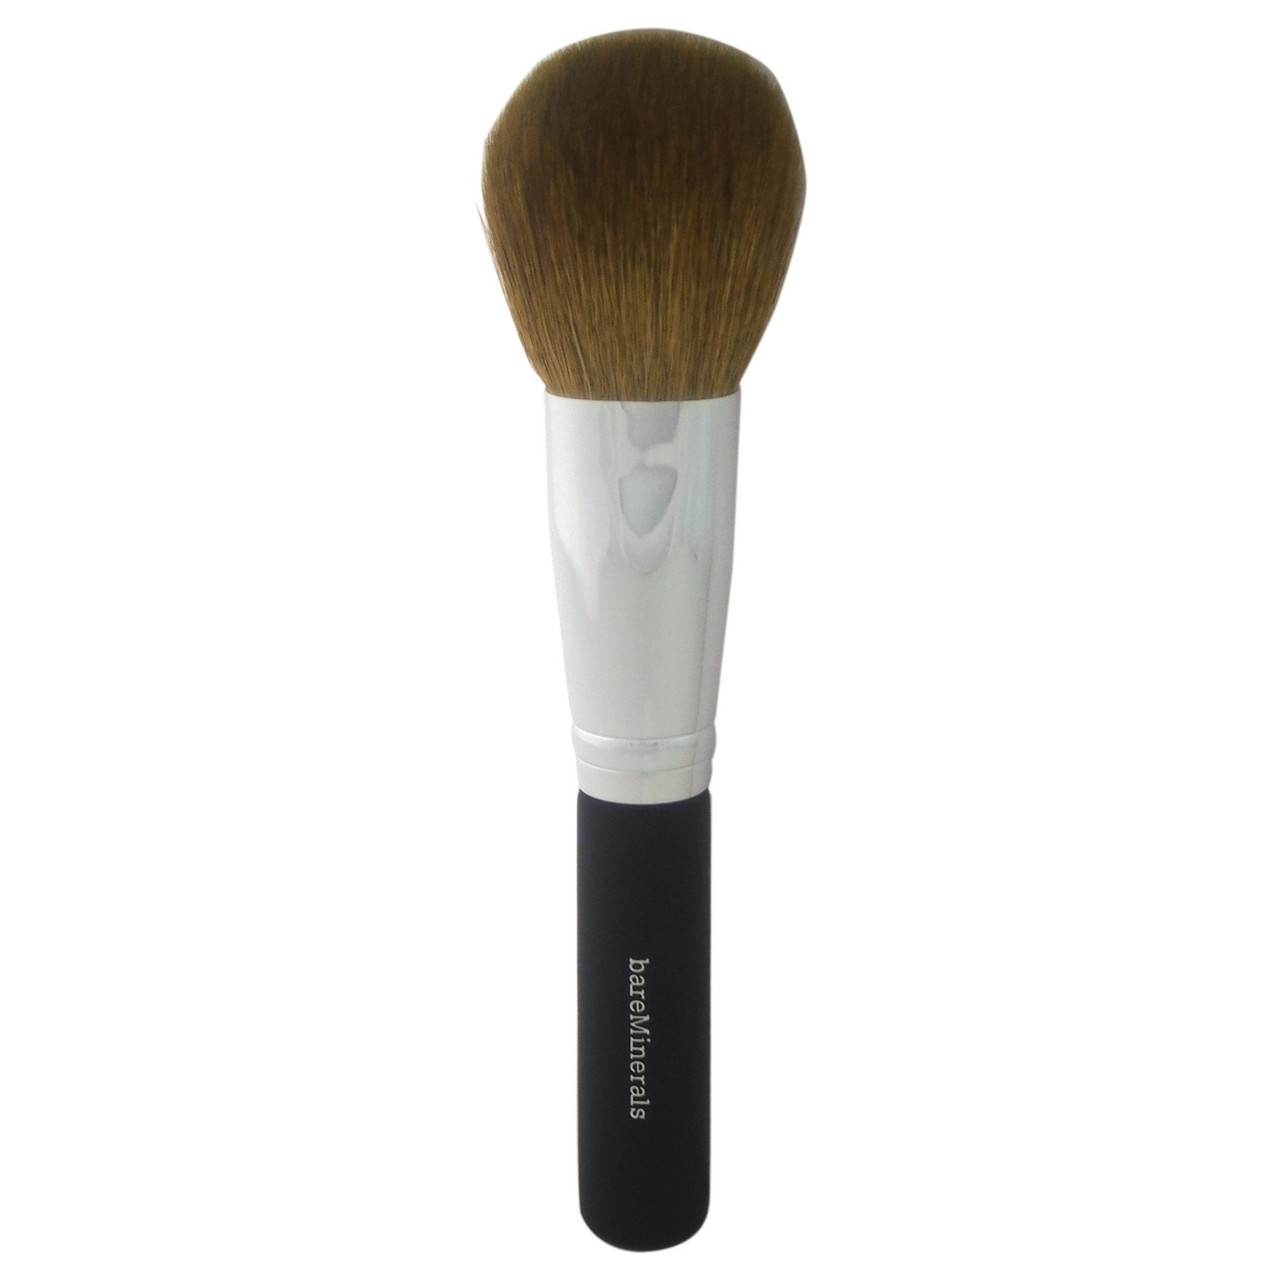 BareMinerals Smoothing Face Brush 1.6 oz 